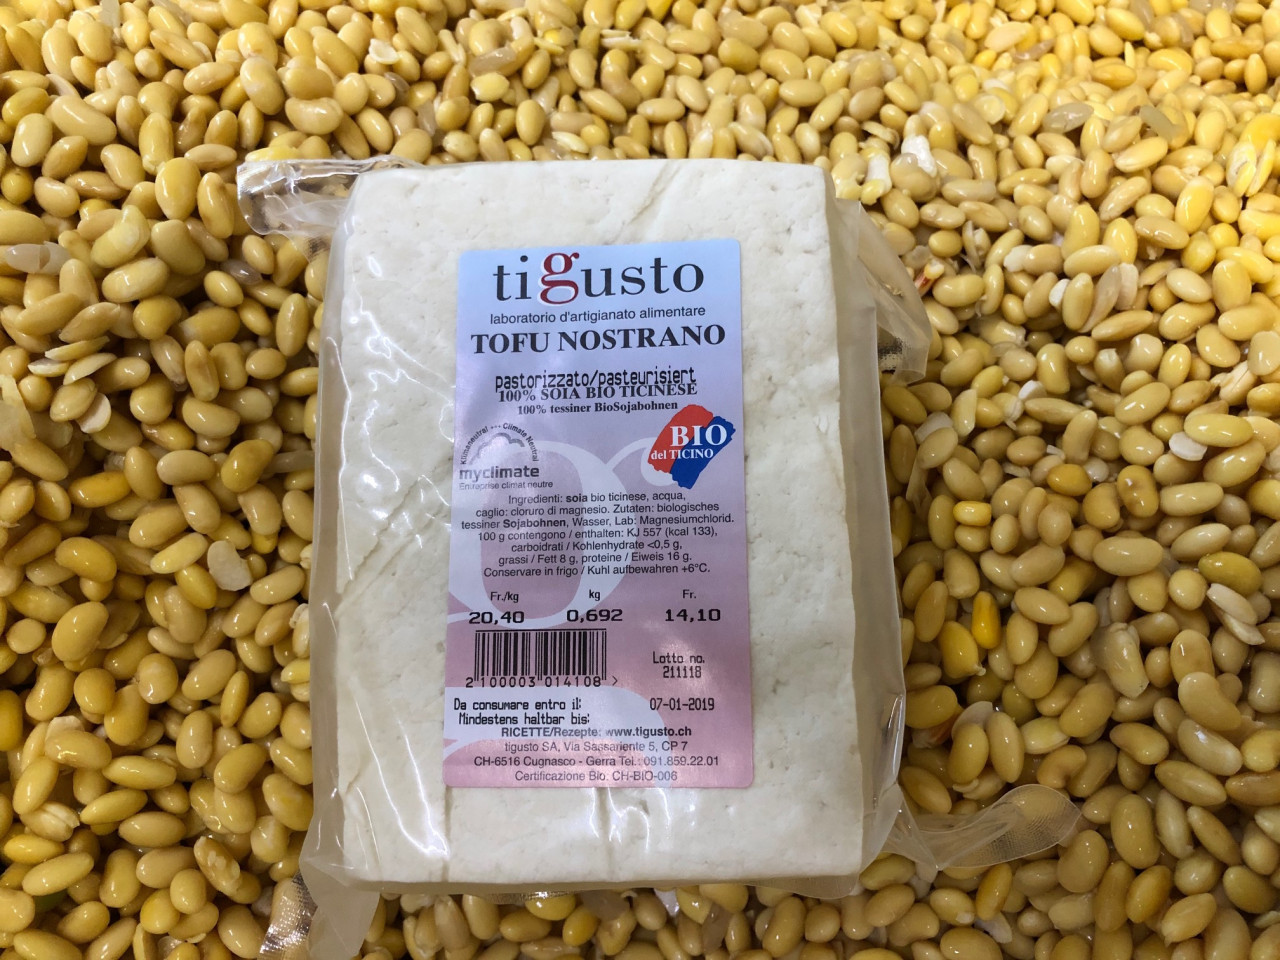 Dalla materia prima al prodotto finito: da 1 kg di fagiolini di soia secca si ottengono circa 2 kg di tofu fresco.